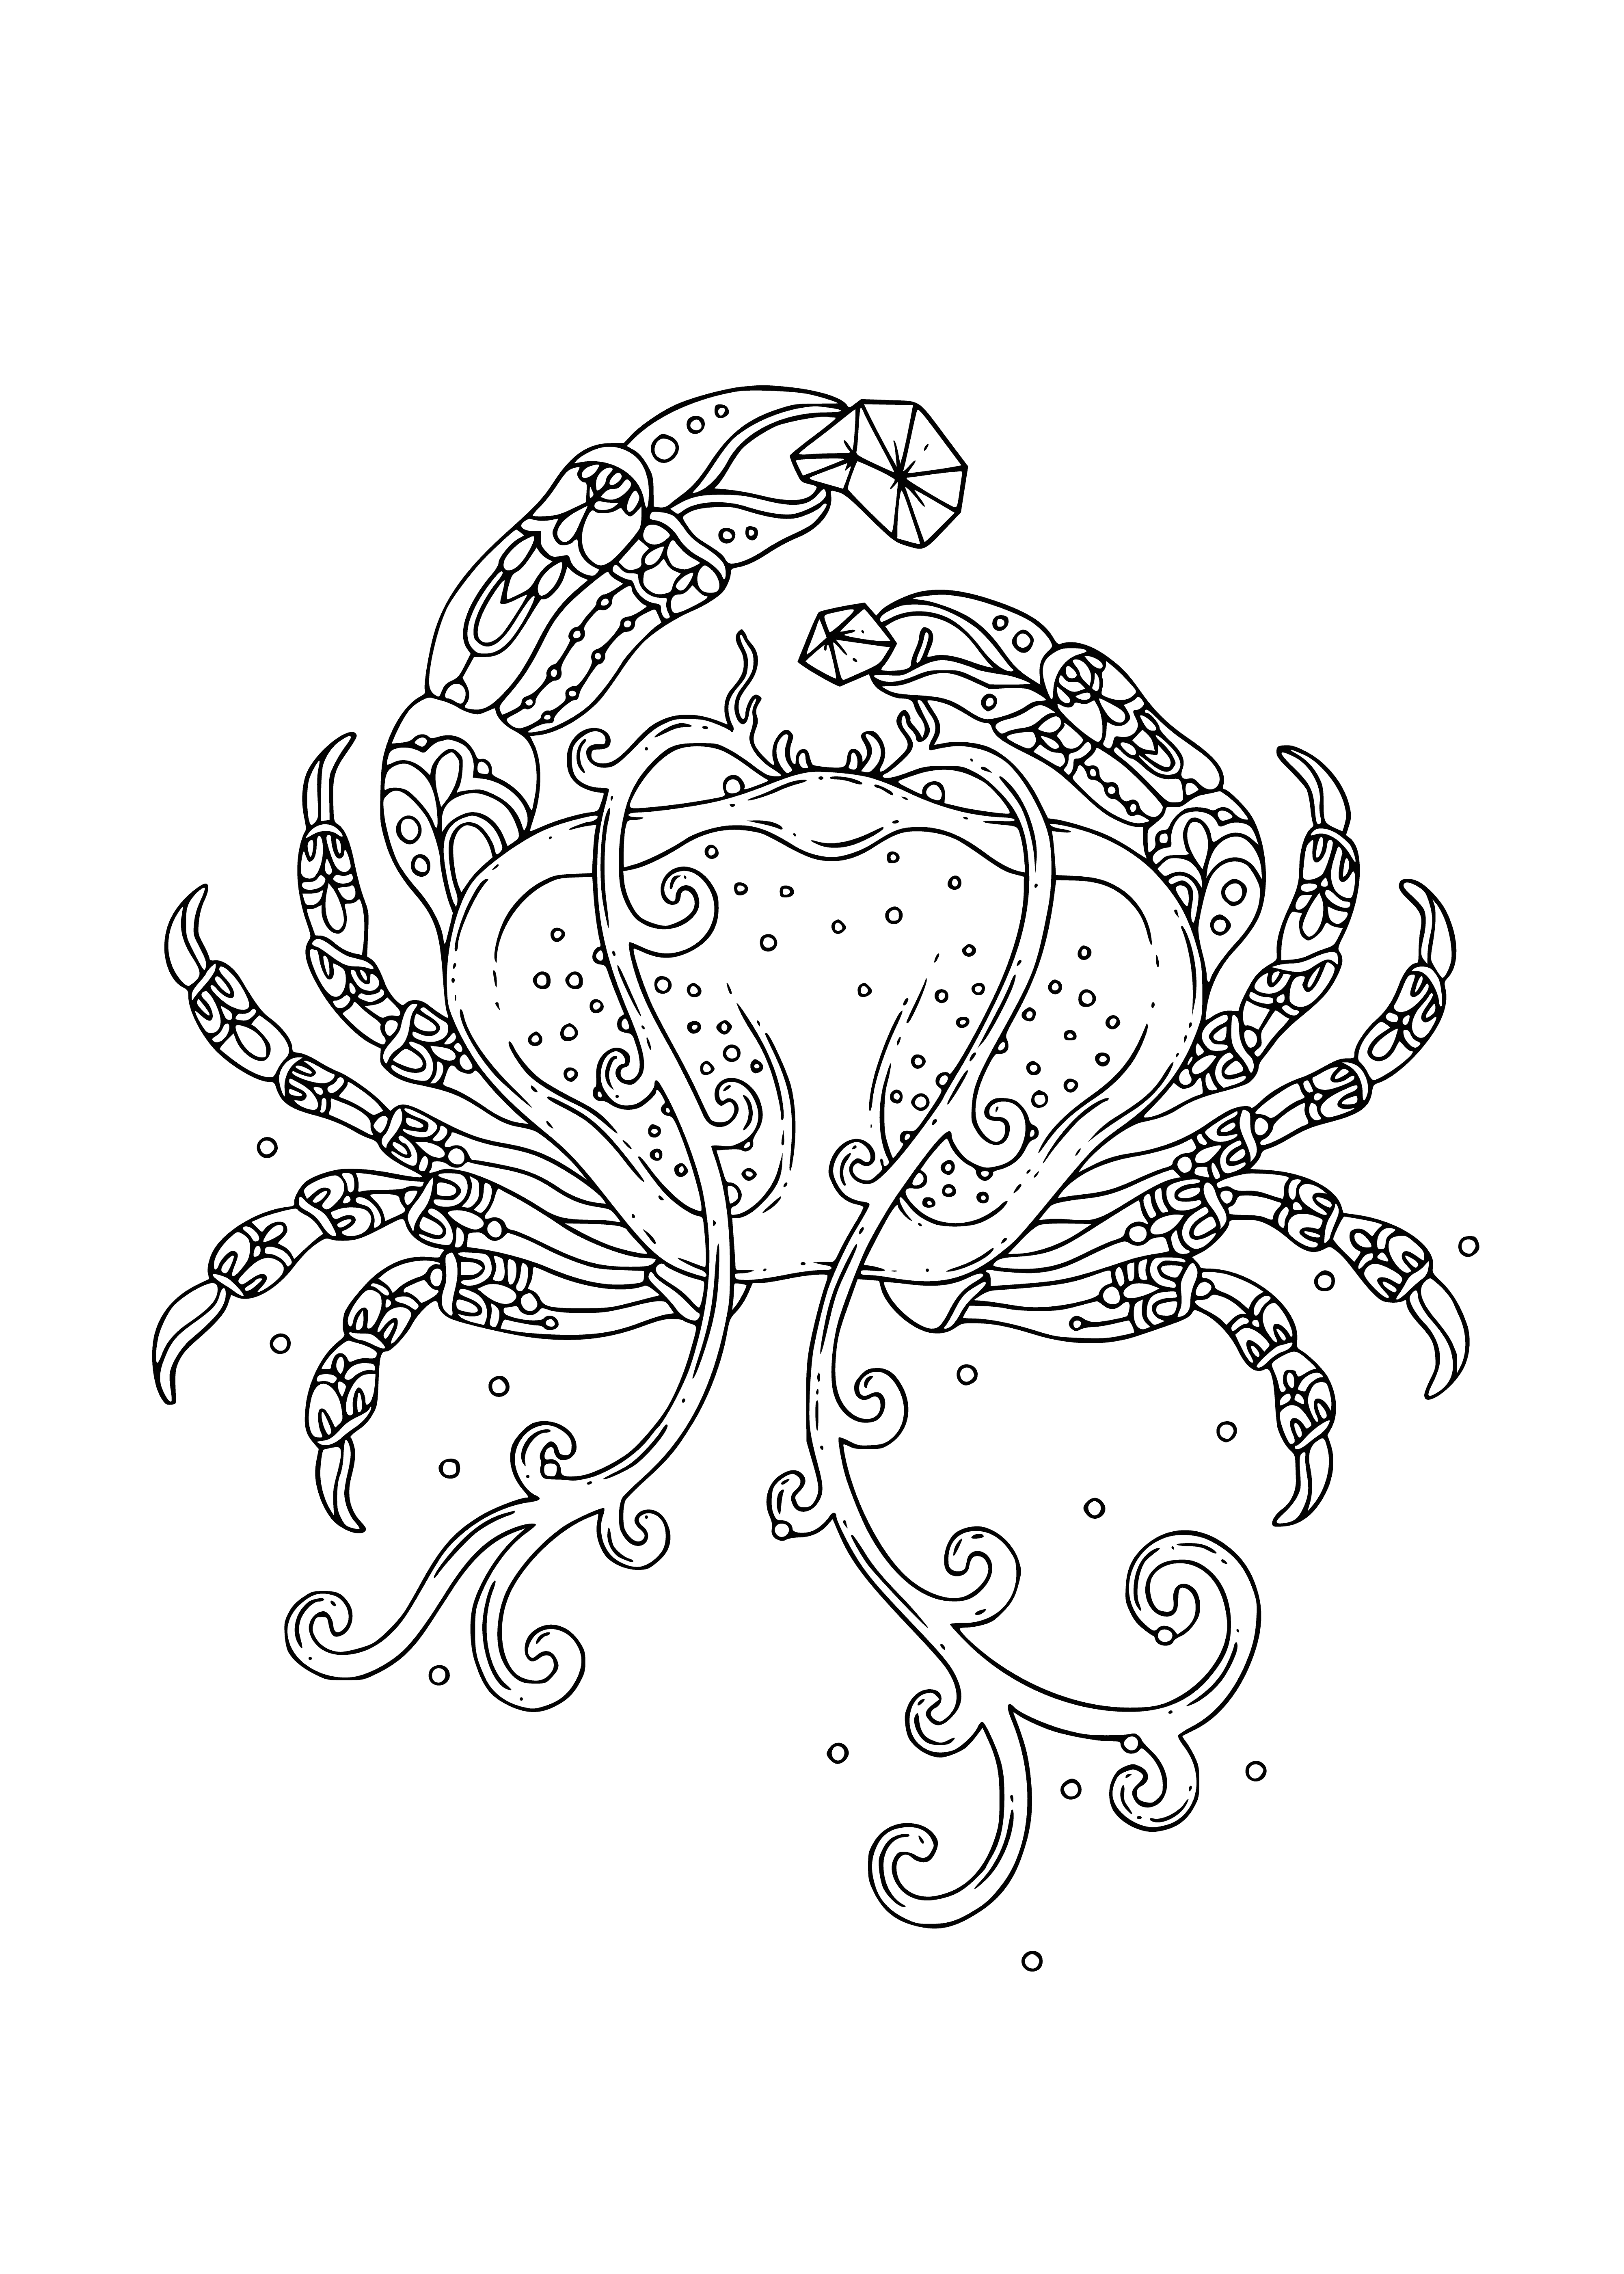 Sea crab coloring page